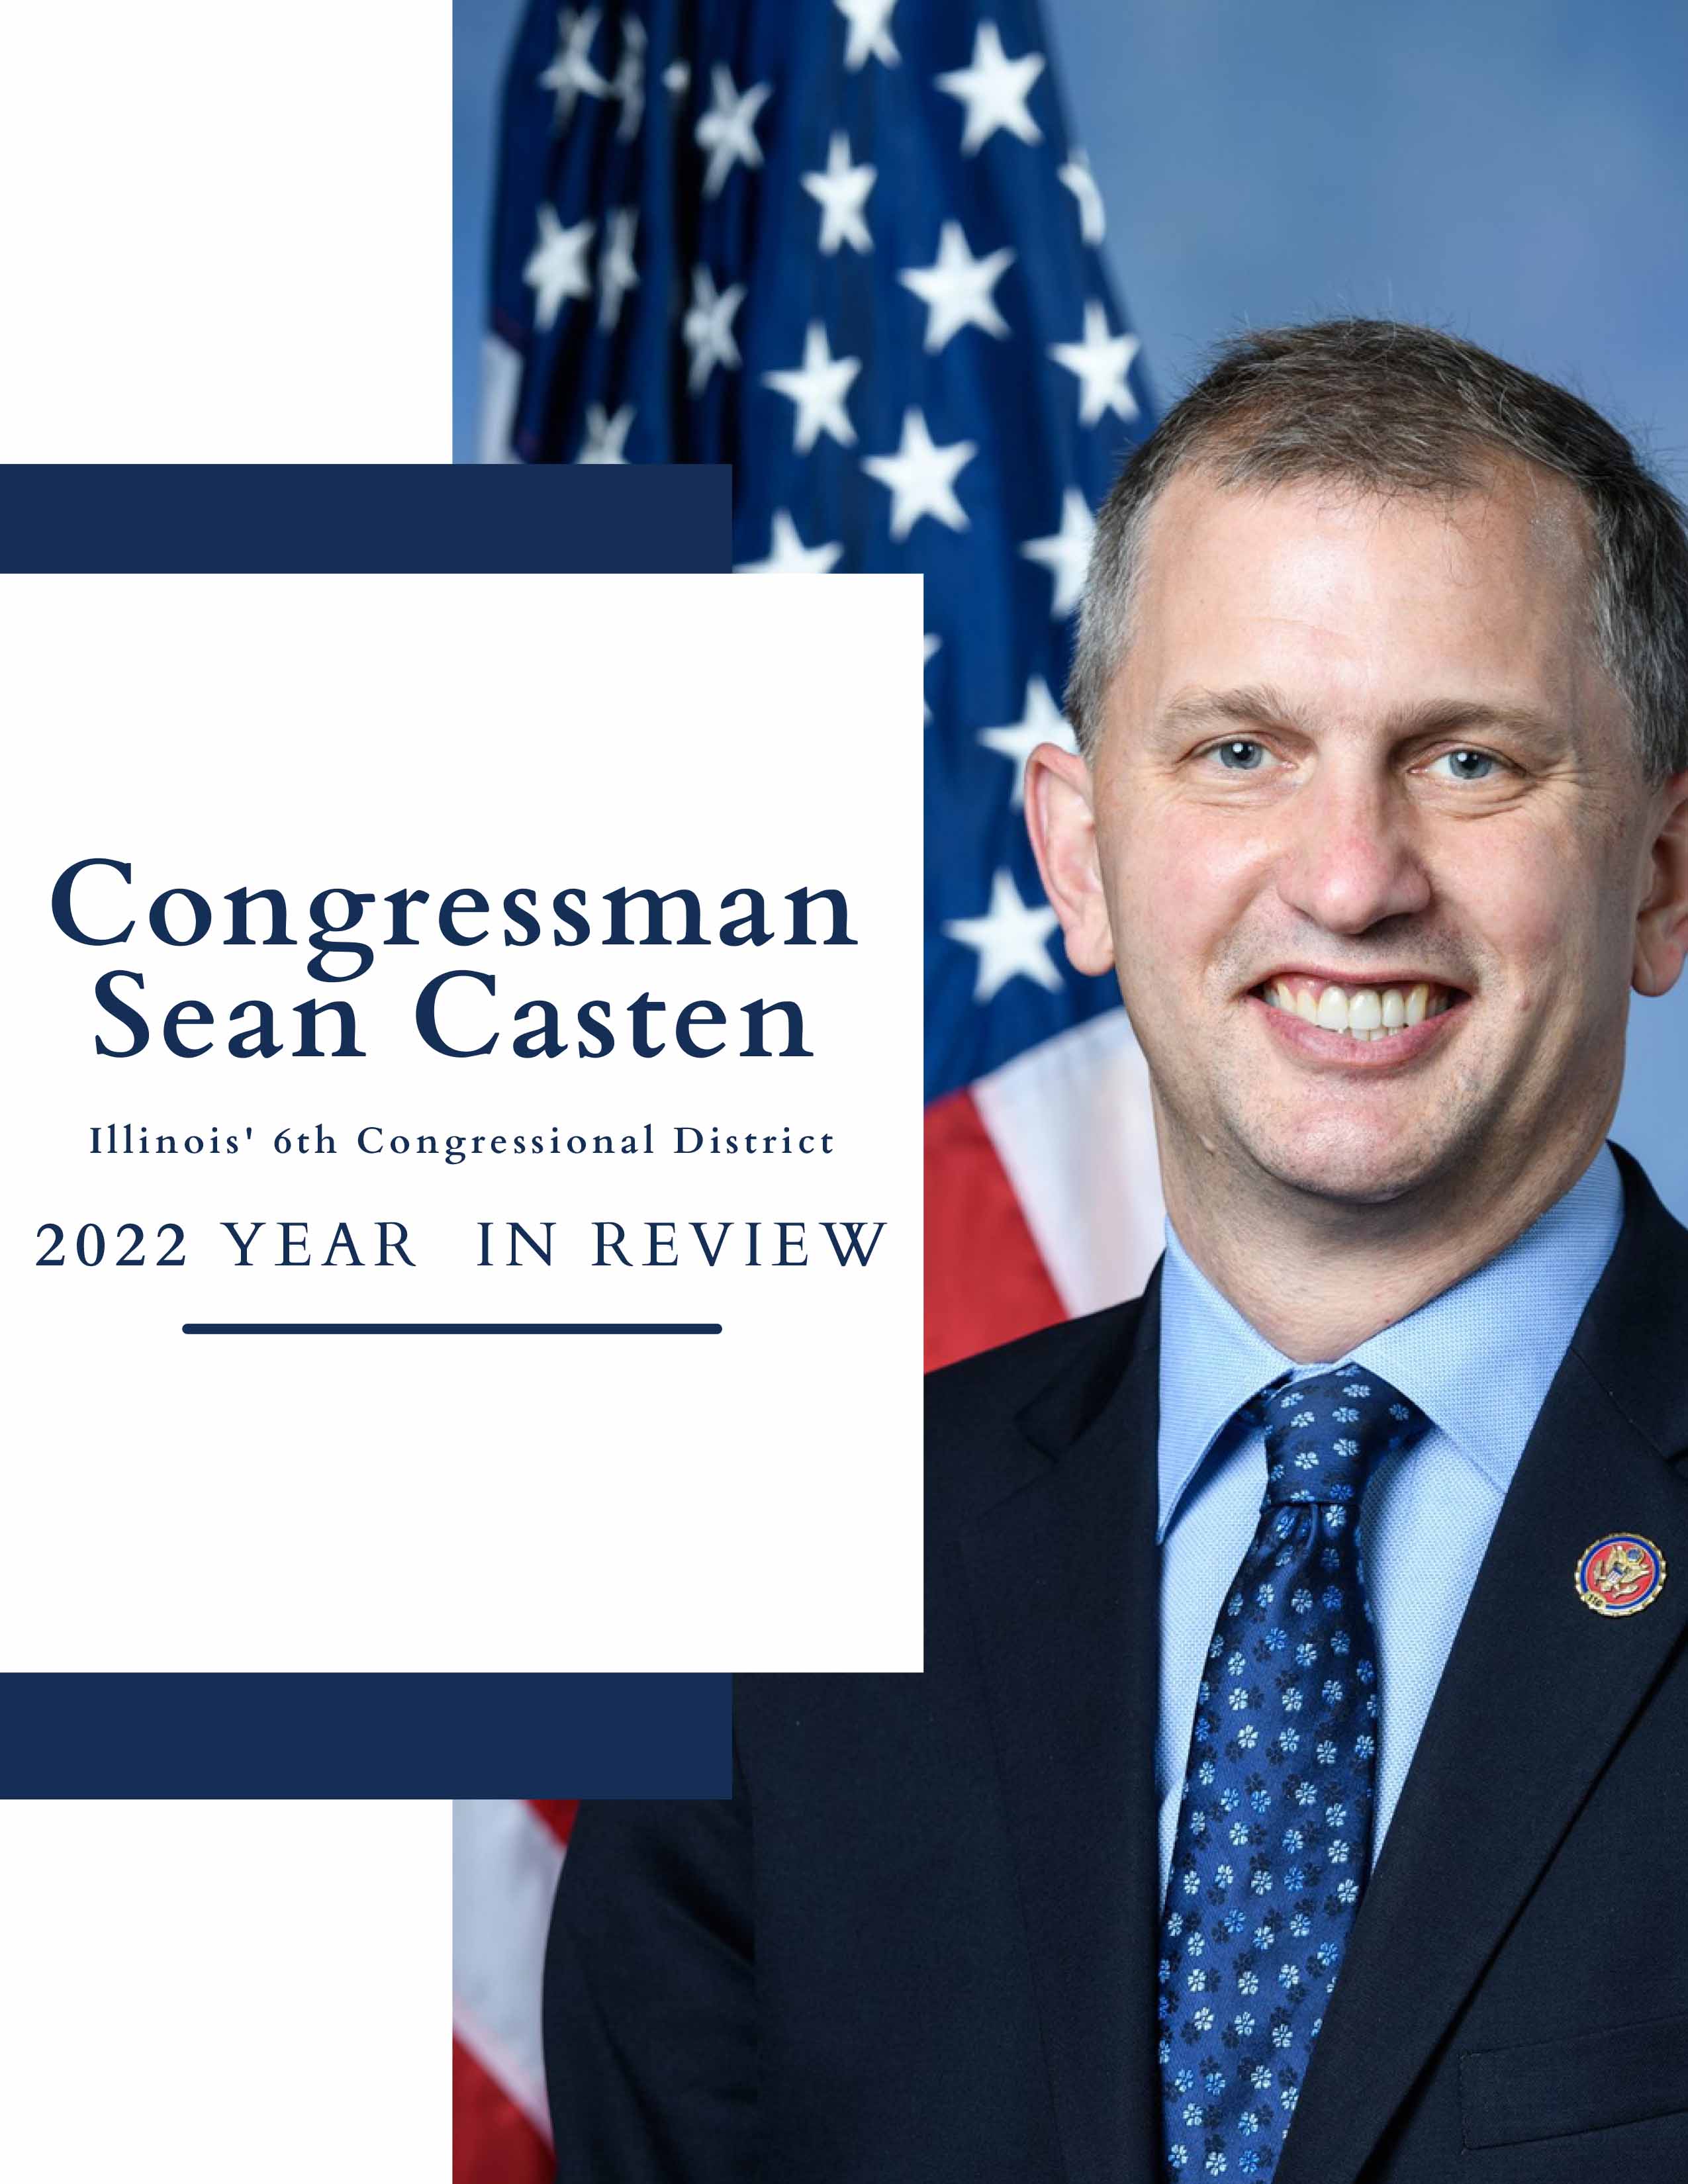 Congressman Sean Casten 2022 Year in Review image 1